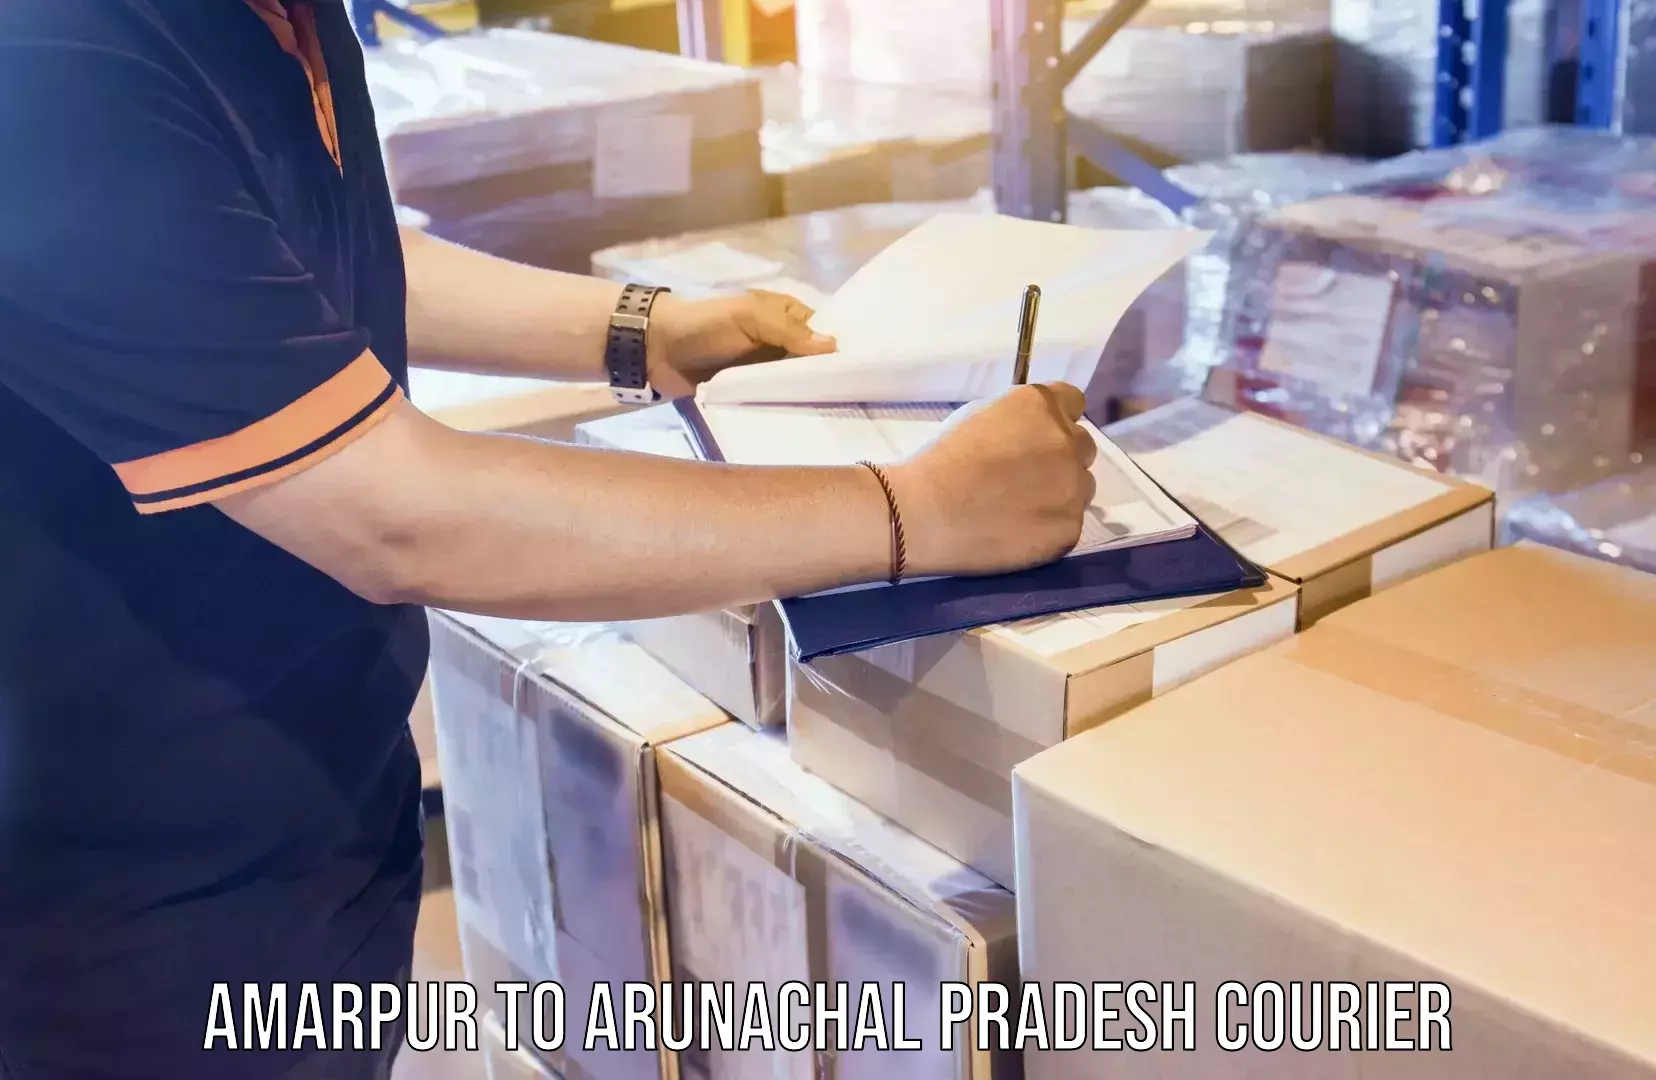 Cost-effective courier options Amarpur to Arunachal Pradesh